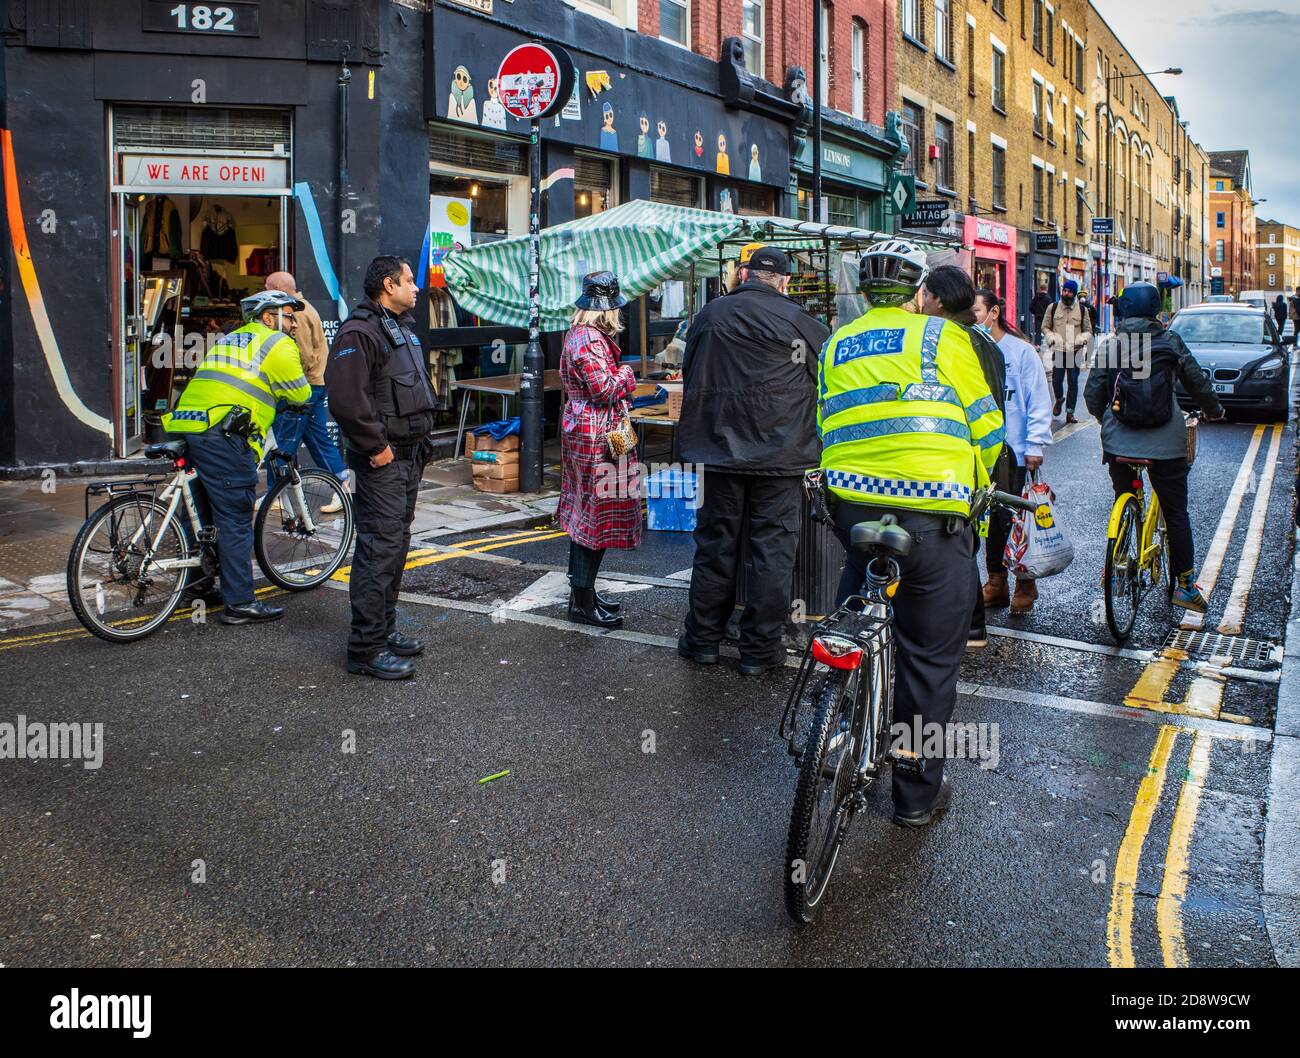 Cumplimiento del mercado de Londres - el personal de los mercados de la policía y de la torre de los hambets hace cumplir las regulaciones de venta de mercado en el mercado de Brick Lane, este de Londres. Foto de stock